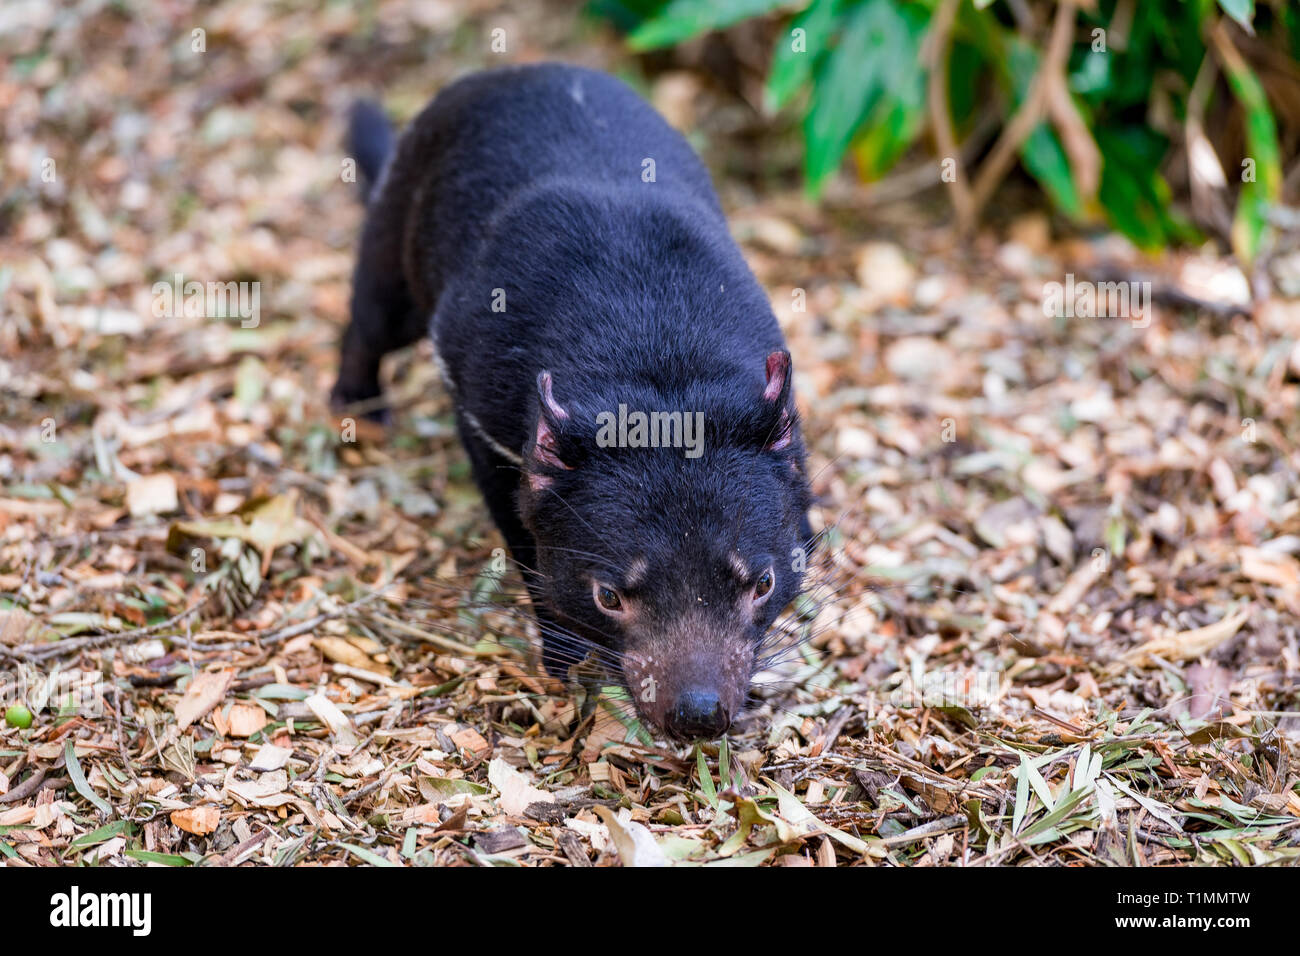 Einen Tasmanischen Teufel huscht über seine Umwelt. Dieses haarige Kreatur ist eine gefährdete einheimische australische Tiere. Stockfoto